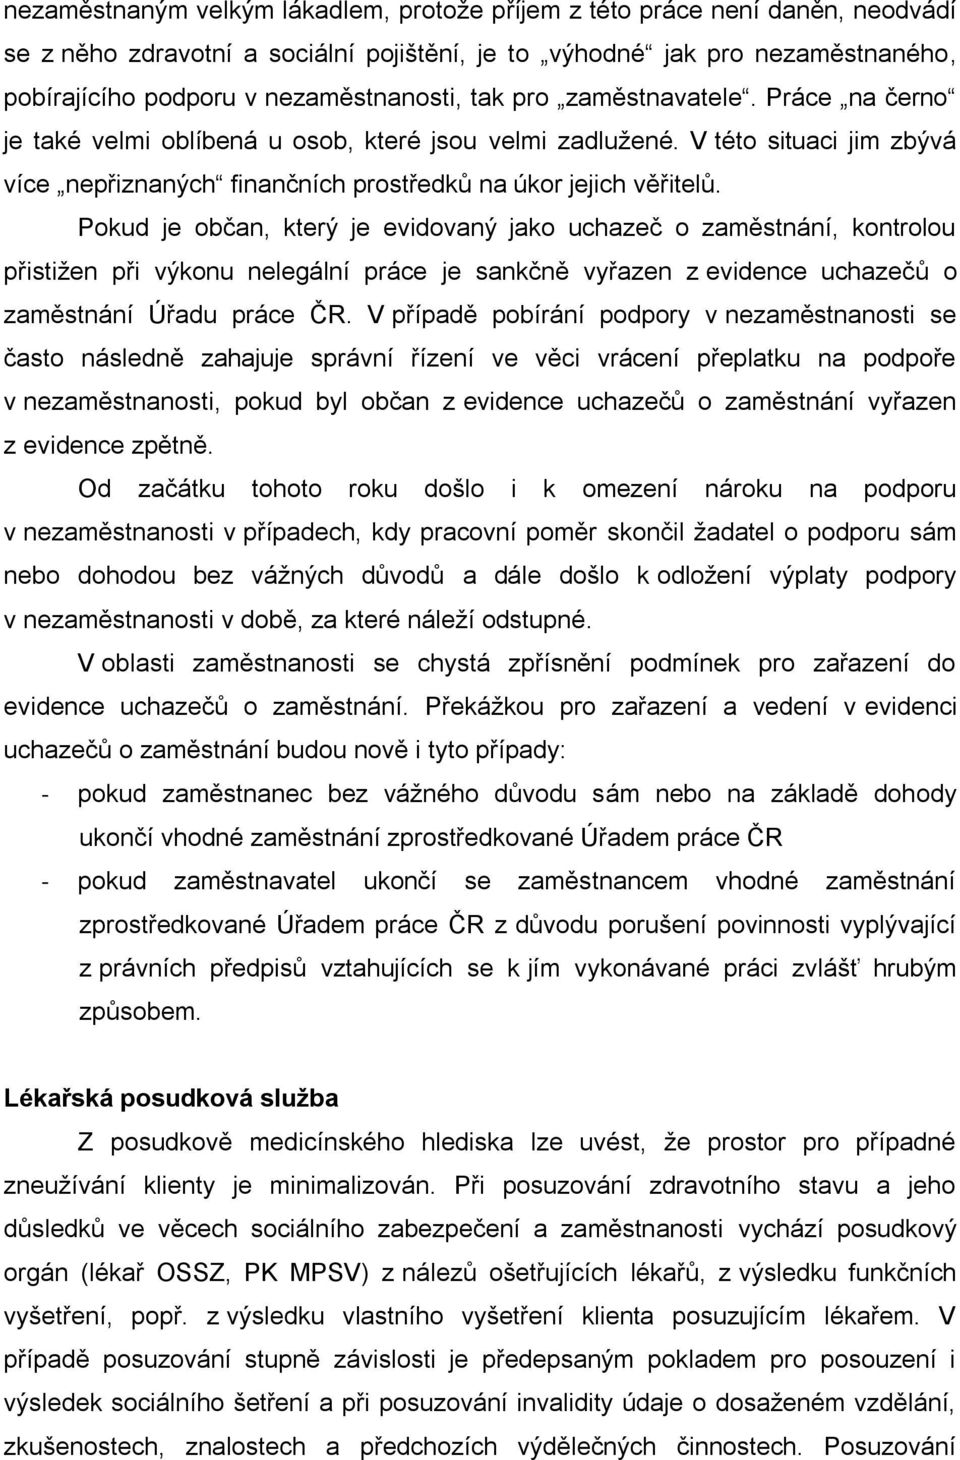 Pokud je občan, který je evidovaný jako uchazeč o zaměstnání, kontrolou přistižen při výkonu nelegální práce je sankčně vyřazen z evidence uchazečů o zaměstnání Úřadu práce ČR.